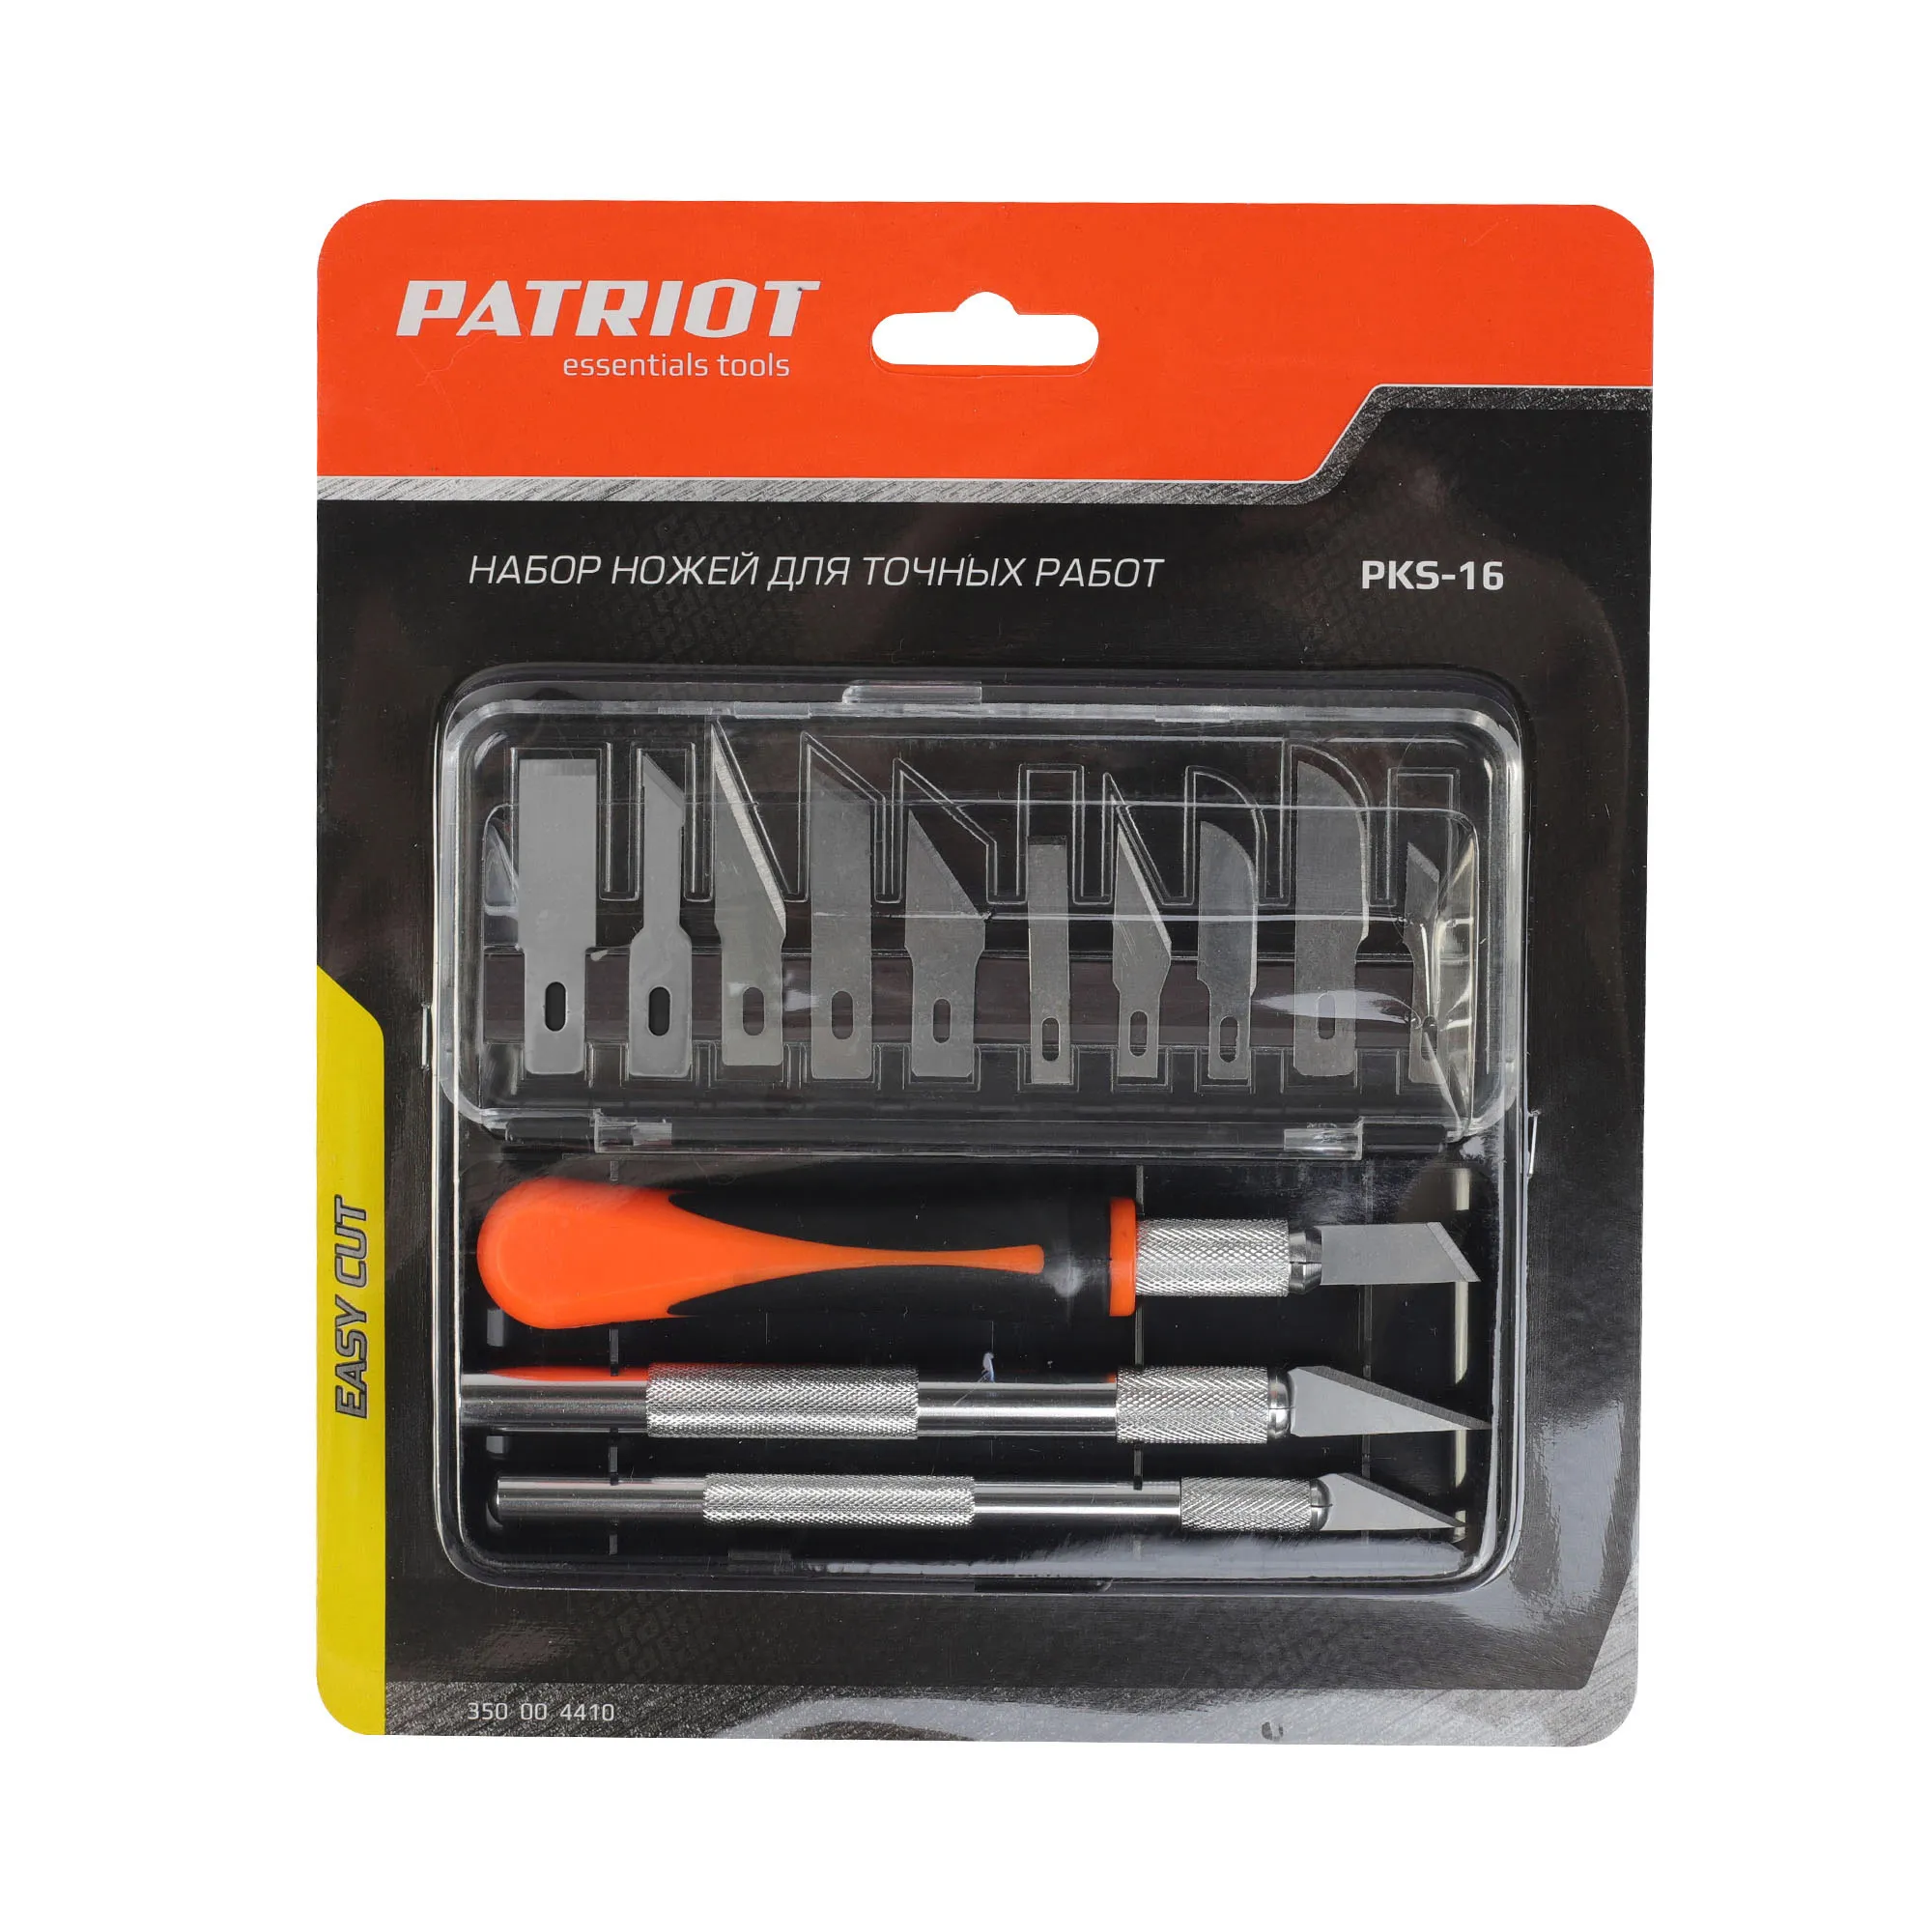 Набор ножей PATRIOT PKS 16 для точных работ 350004410